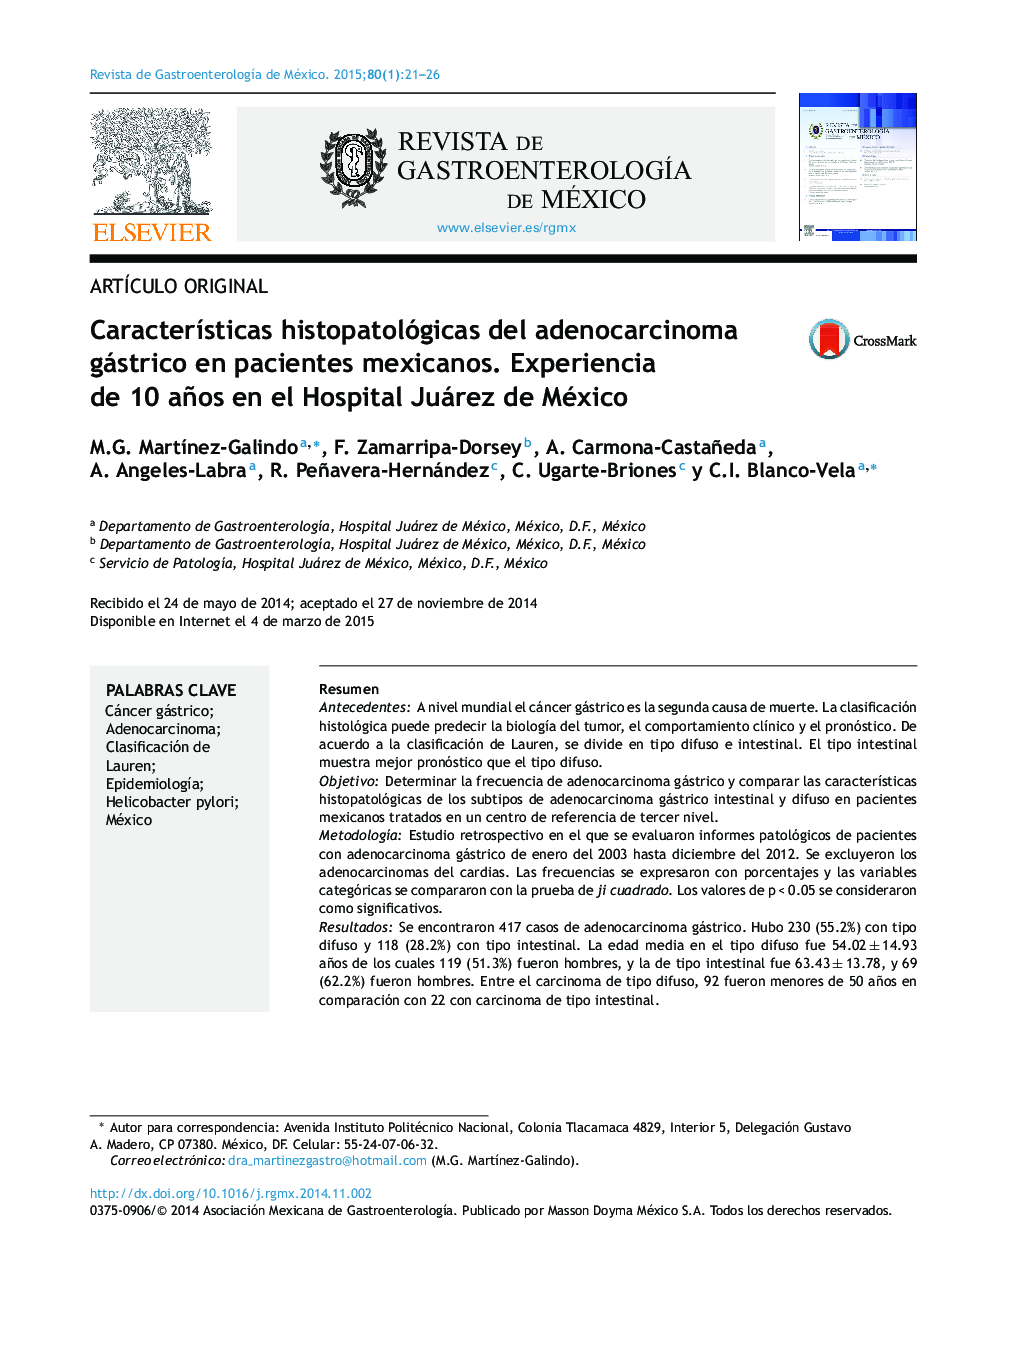 Características histopatológicas del adenocarcinoma gástrico en pacientes mexicanos. Experiencia de 10 años en el Hospital Juárez de México